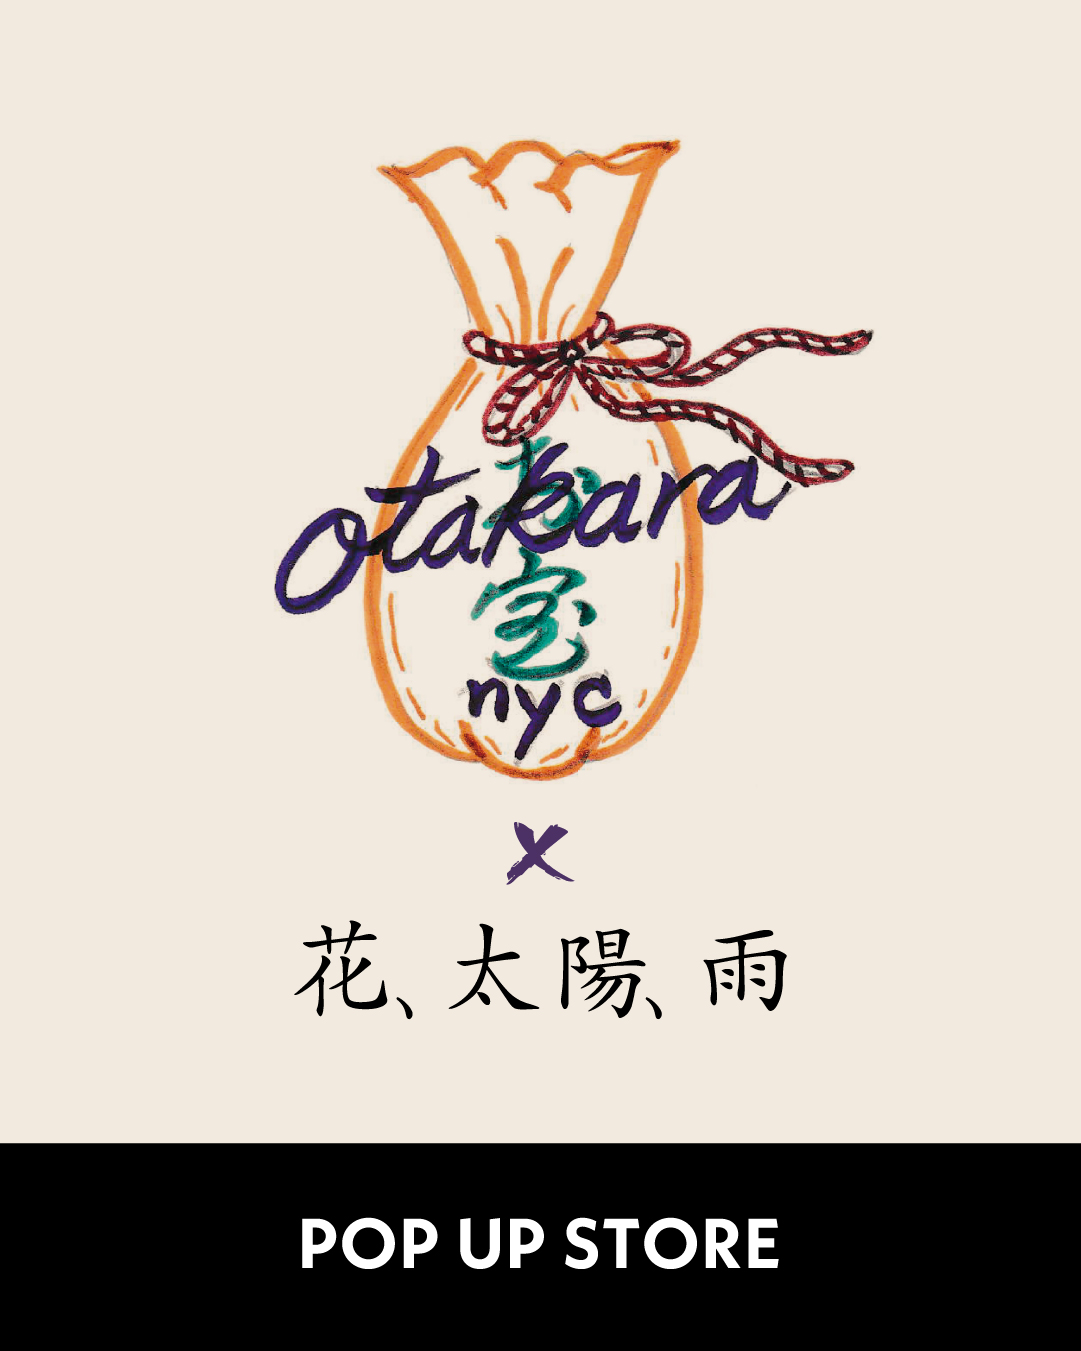 〈OTAKARA NYC〉POP-UP STORE 新店舗「花、太陽、雨」での追加開催が決定